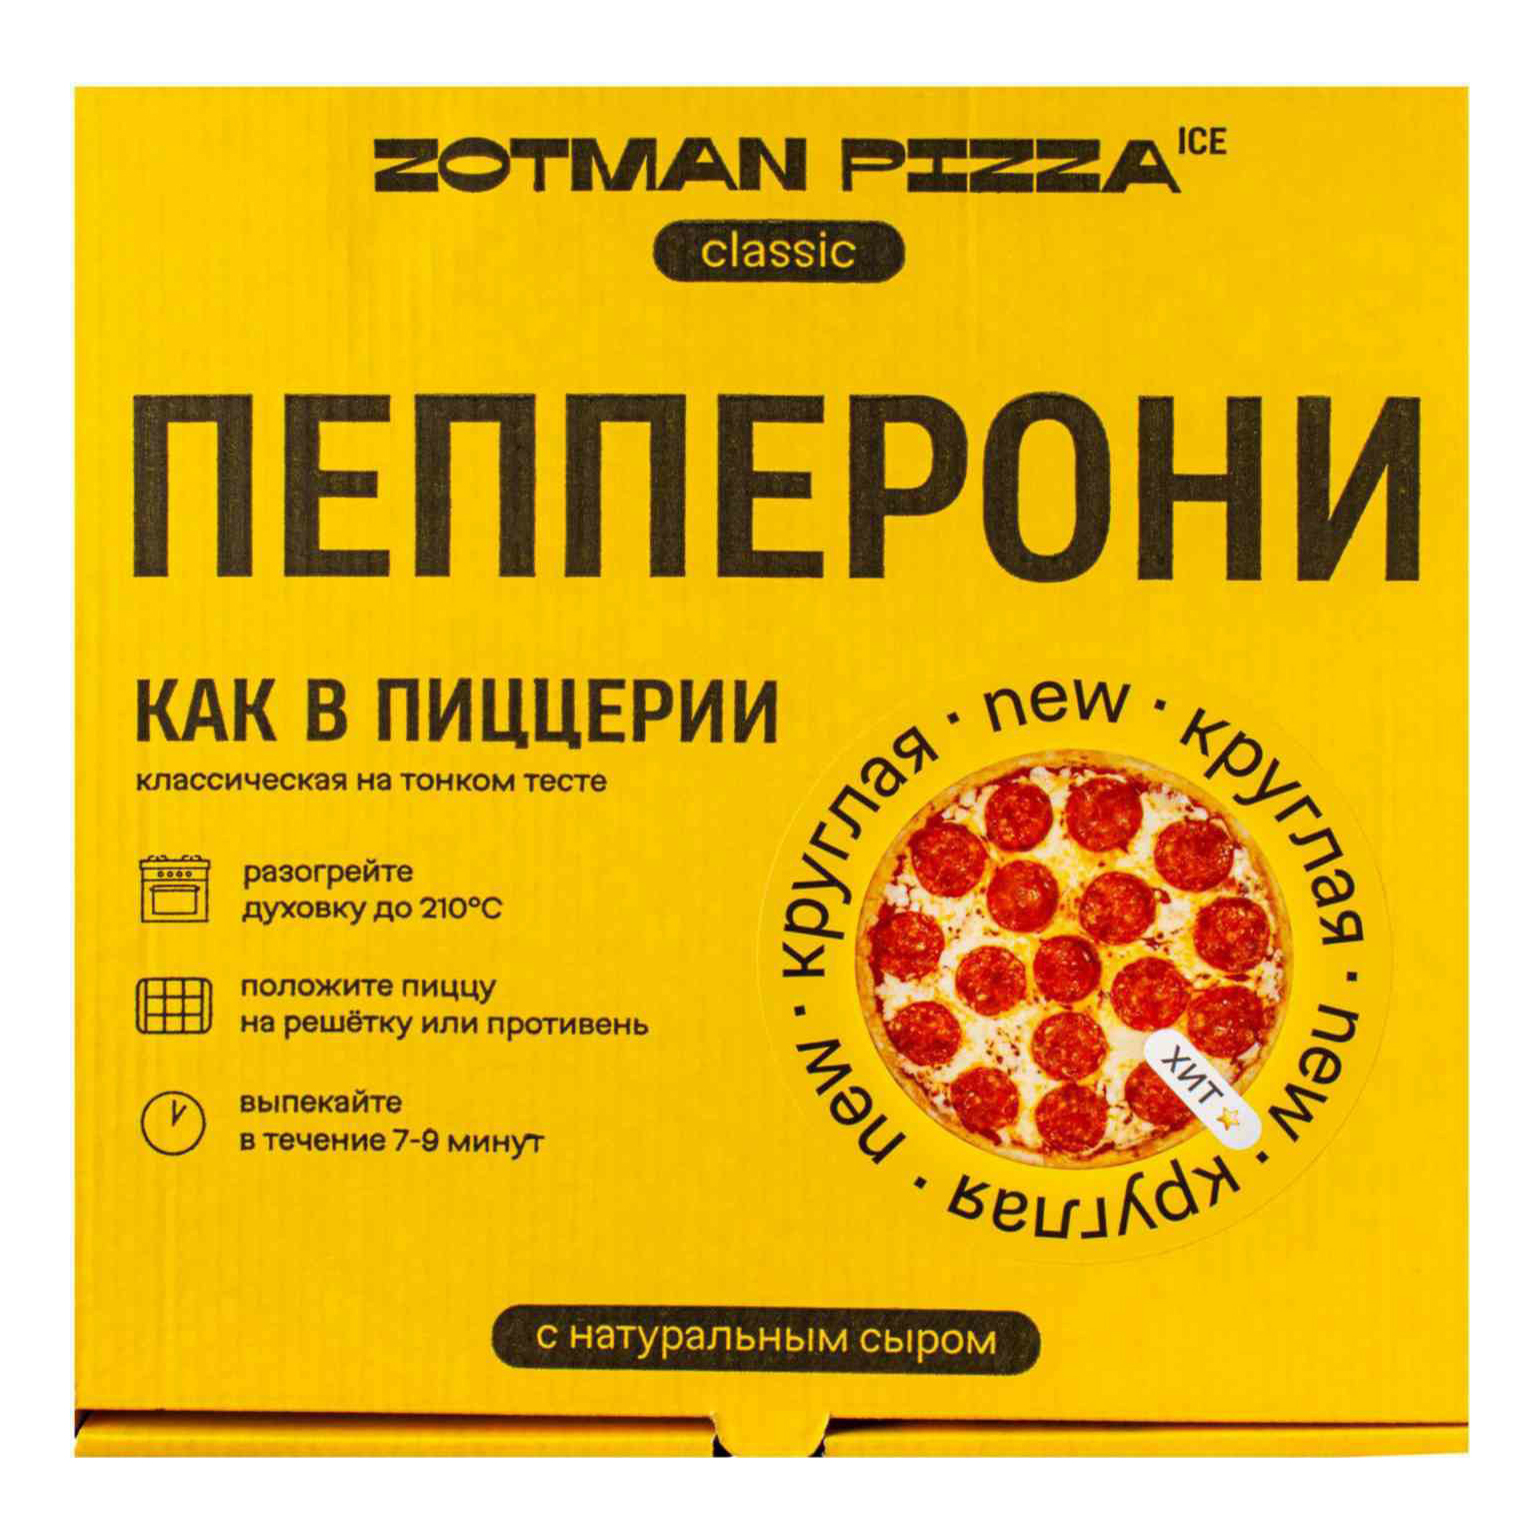 сколько стоит пицца пепперони в россии фото 46